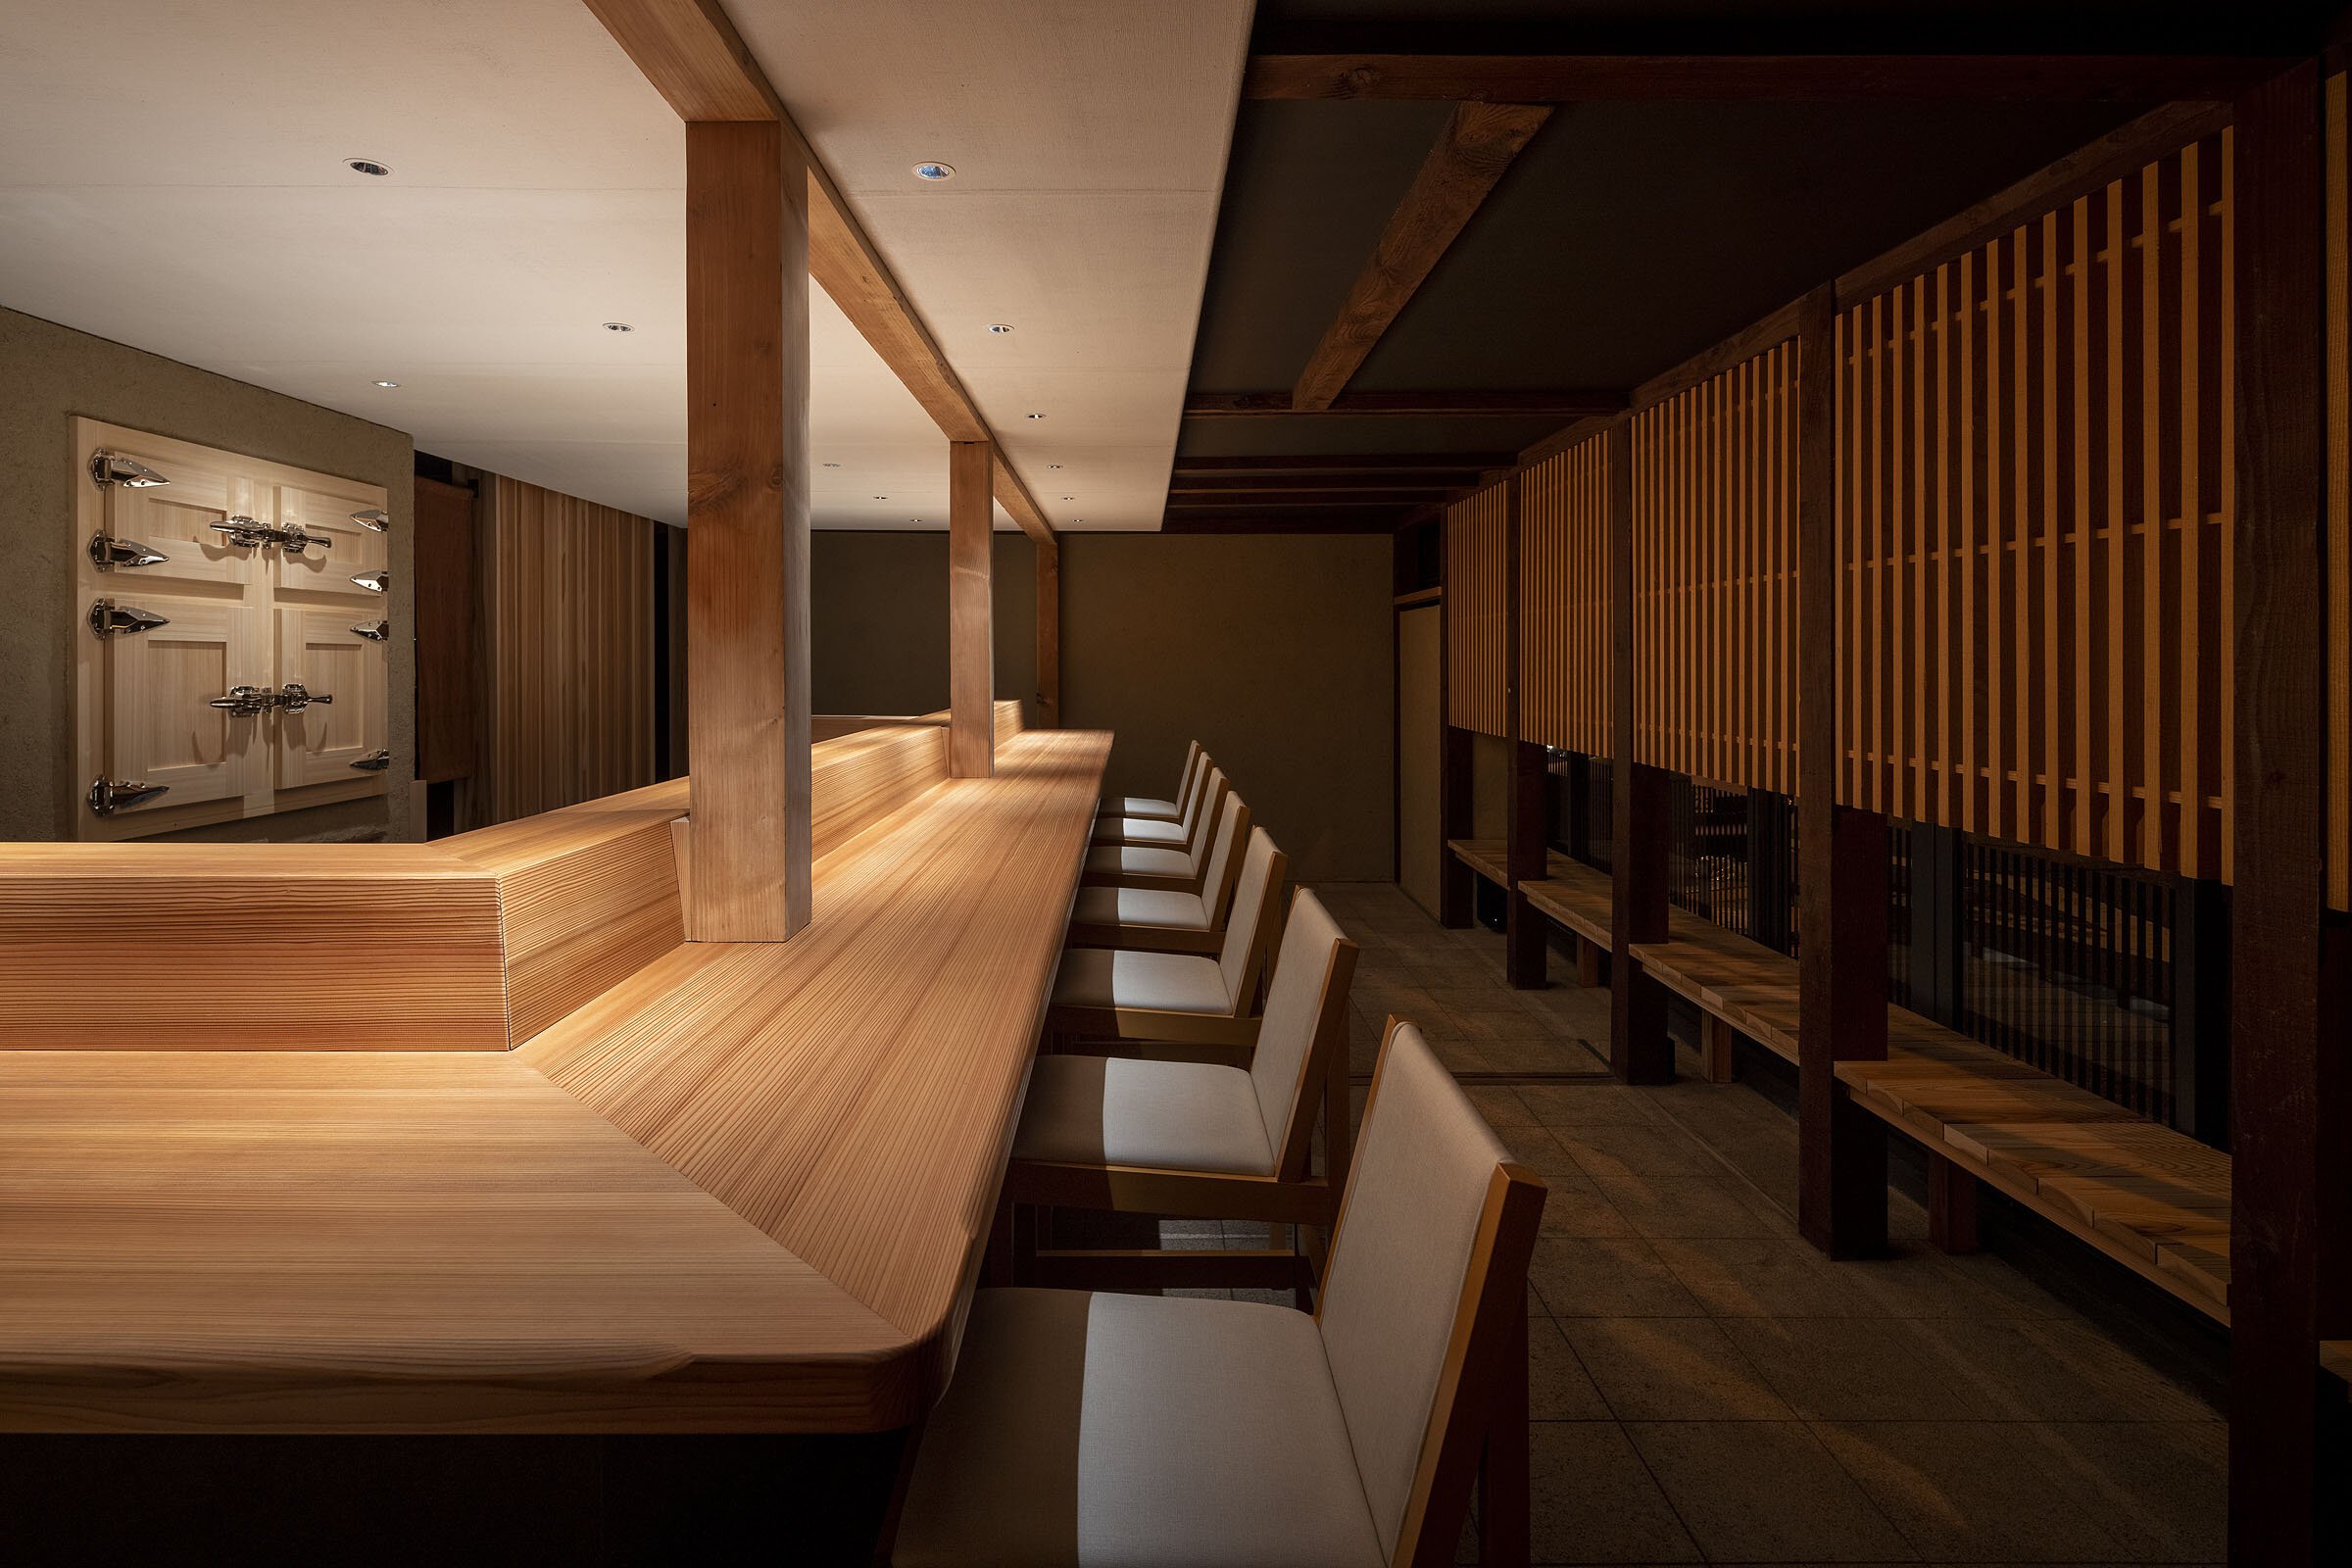  cafe co.の森井良幸がインテリアデザインを手掛けた「鮨 かうと」。カウンターは吉野の木工作家、森幸太郎によるもの。 